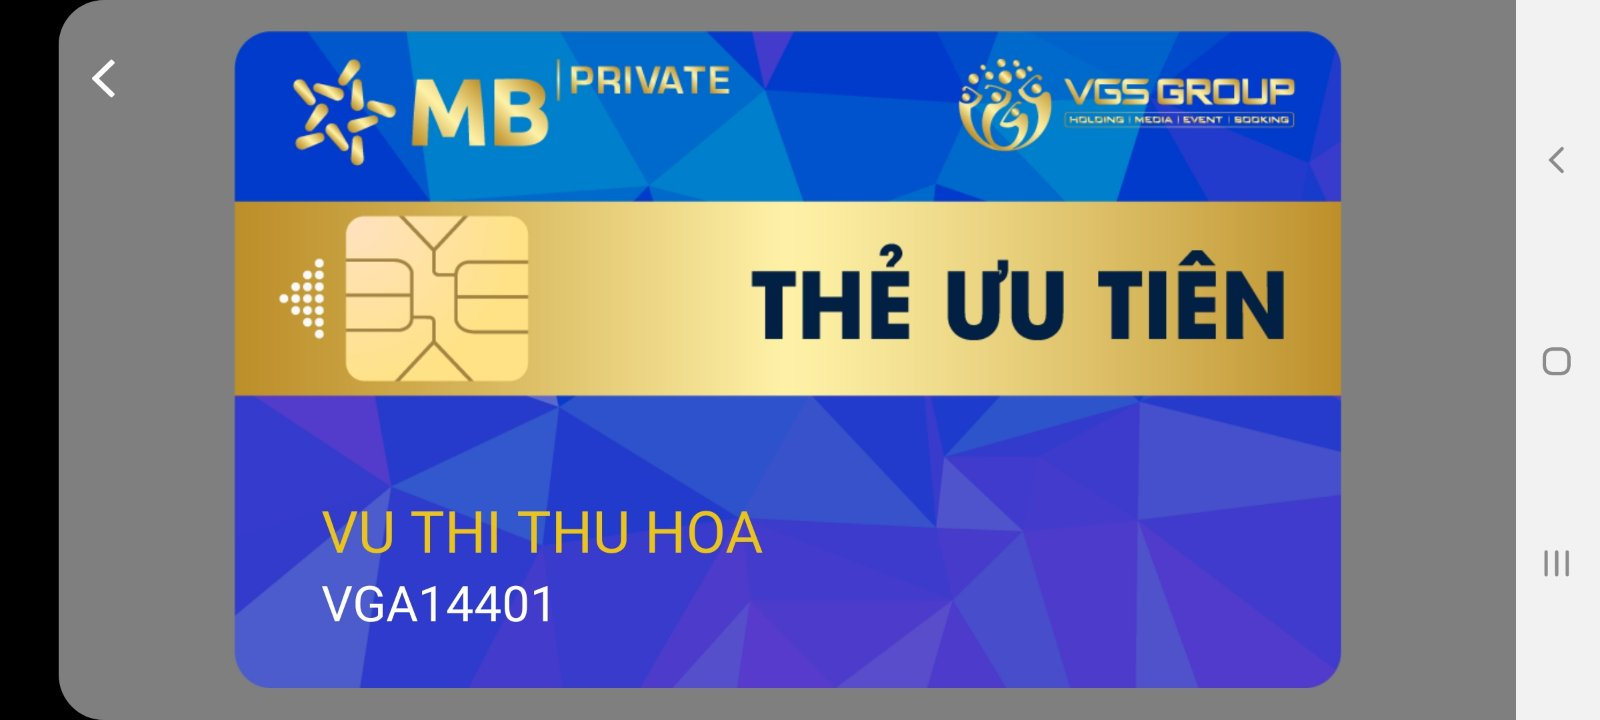 MBbank và VGSholding hợp tác triển khai Ngân hàng số trên ứng dụng Vhandicap hỗ trợ thanh toán bằng tài khoản thật.